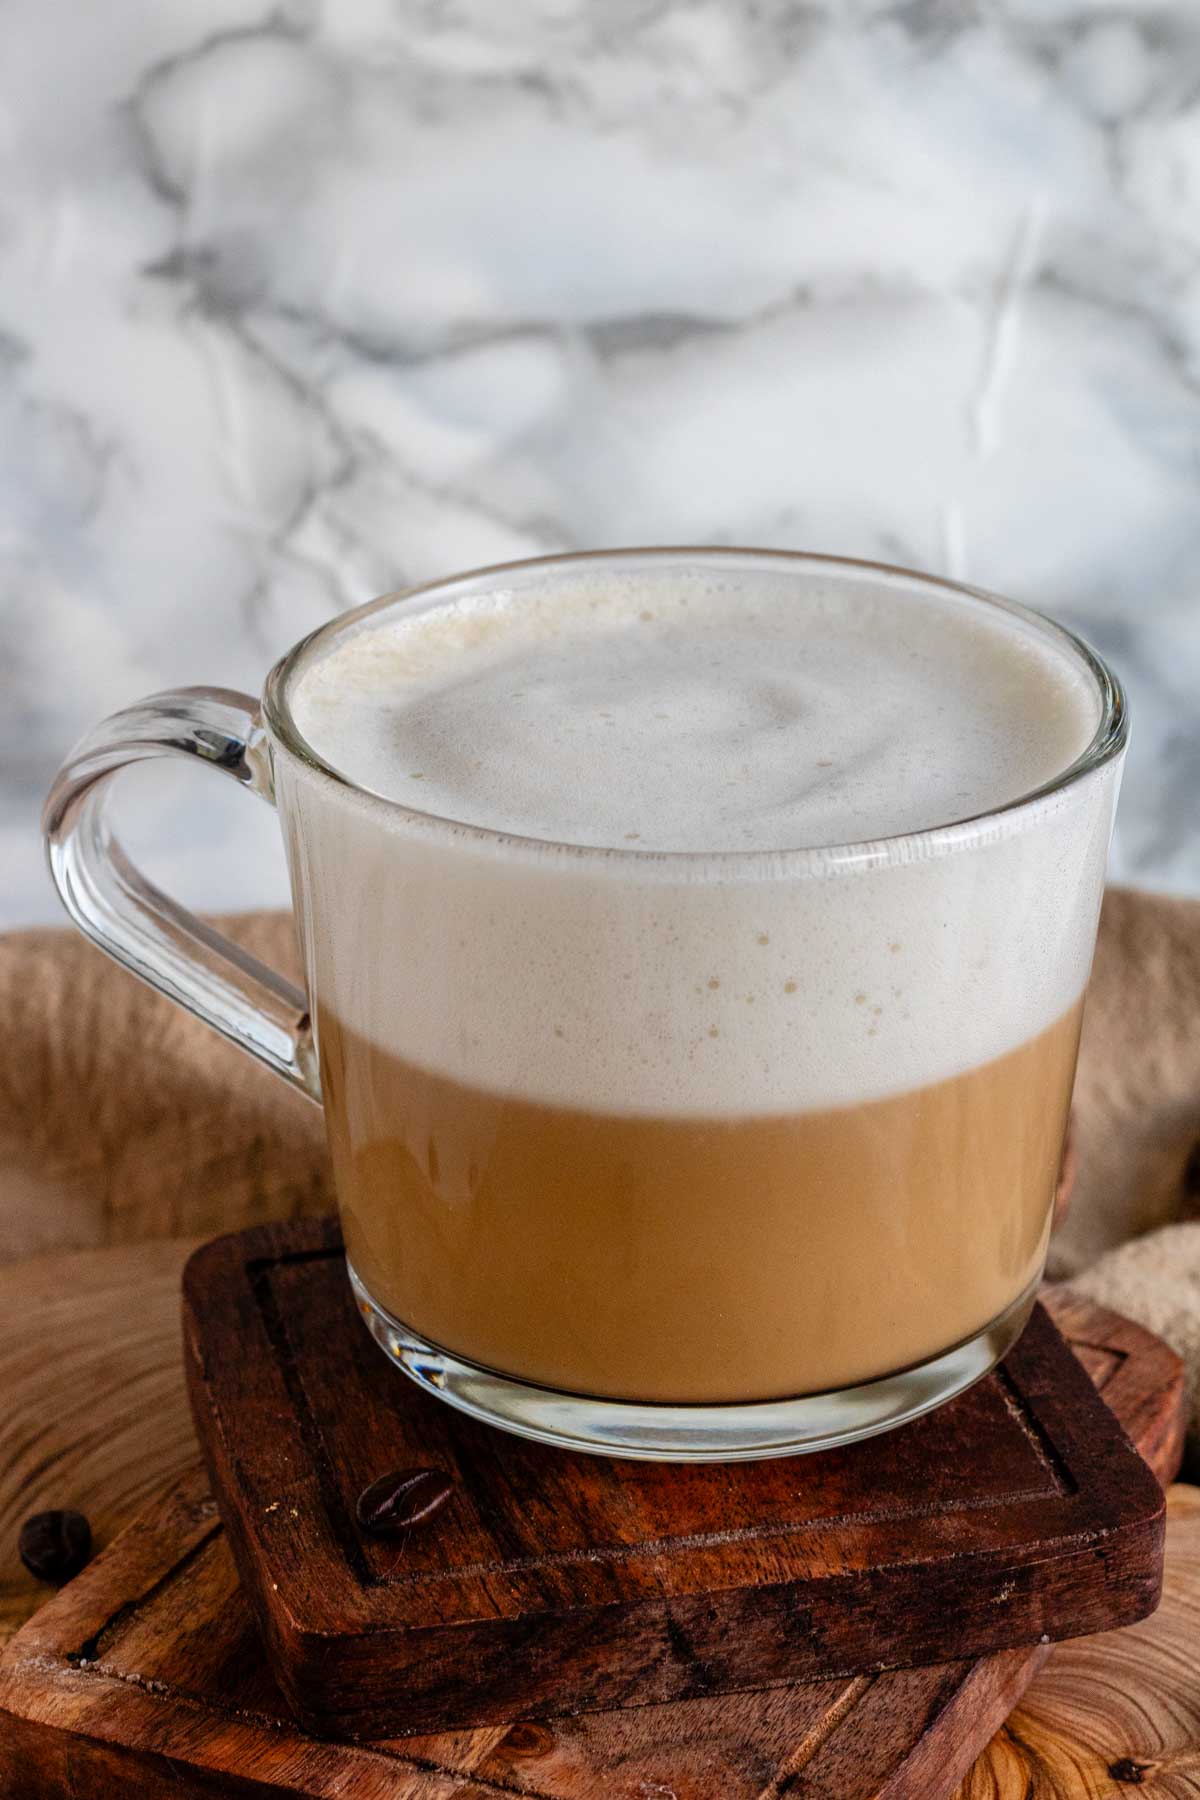 Vanilla oat latte in a glass mug on a wooden board.